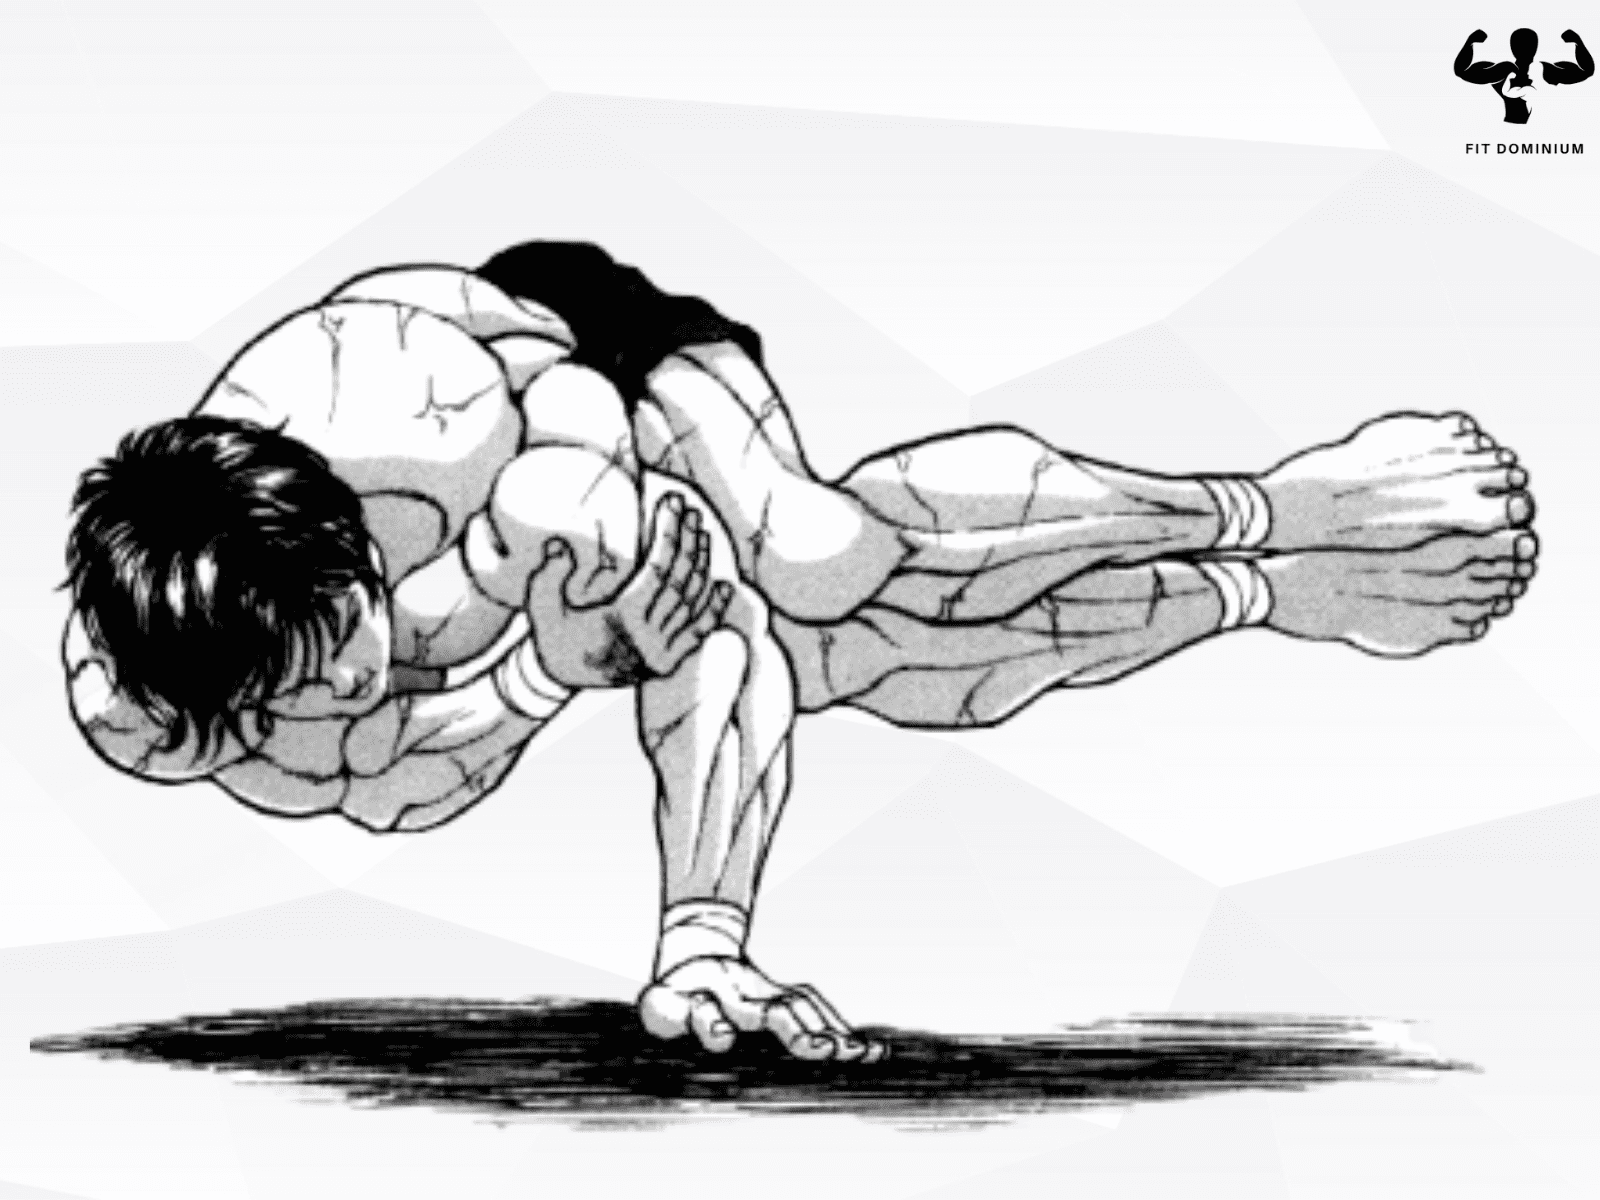 baki workout pose